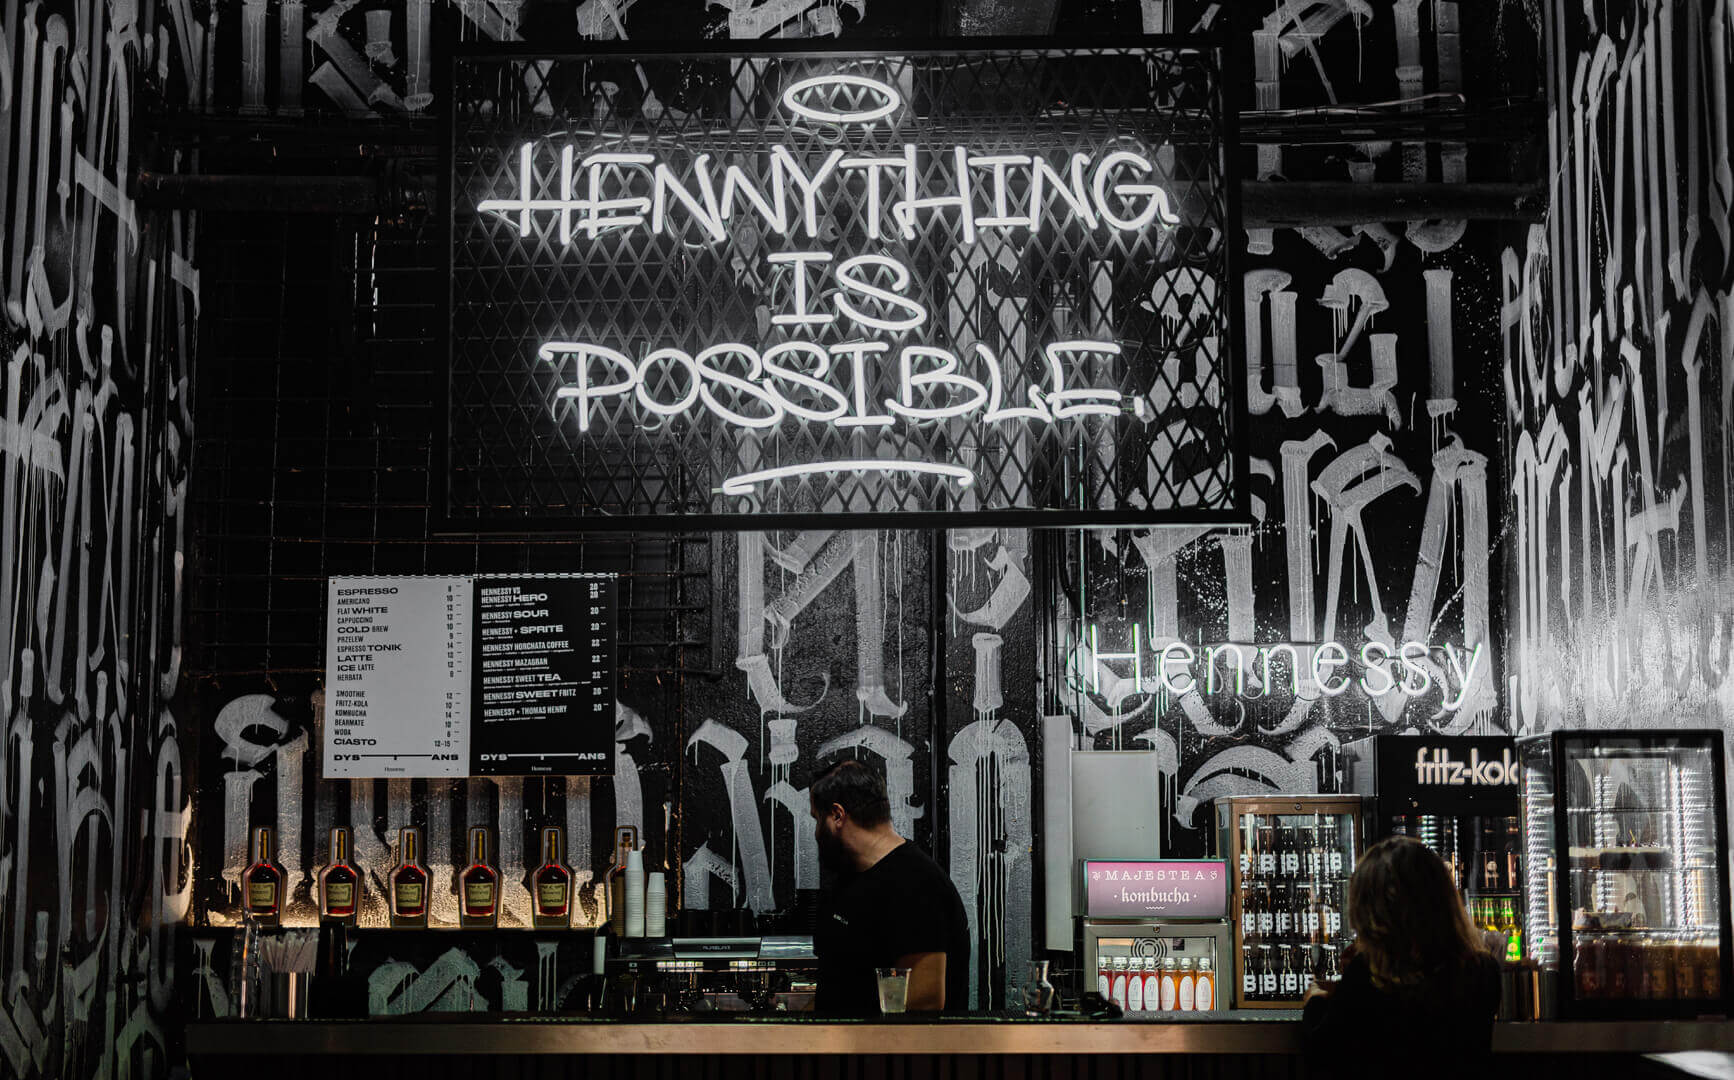 Todo es posible - Cartel de neón en una malla sobre un bar en Gdańsk.